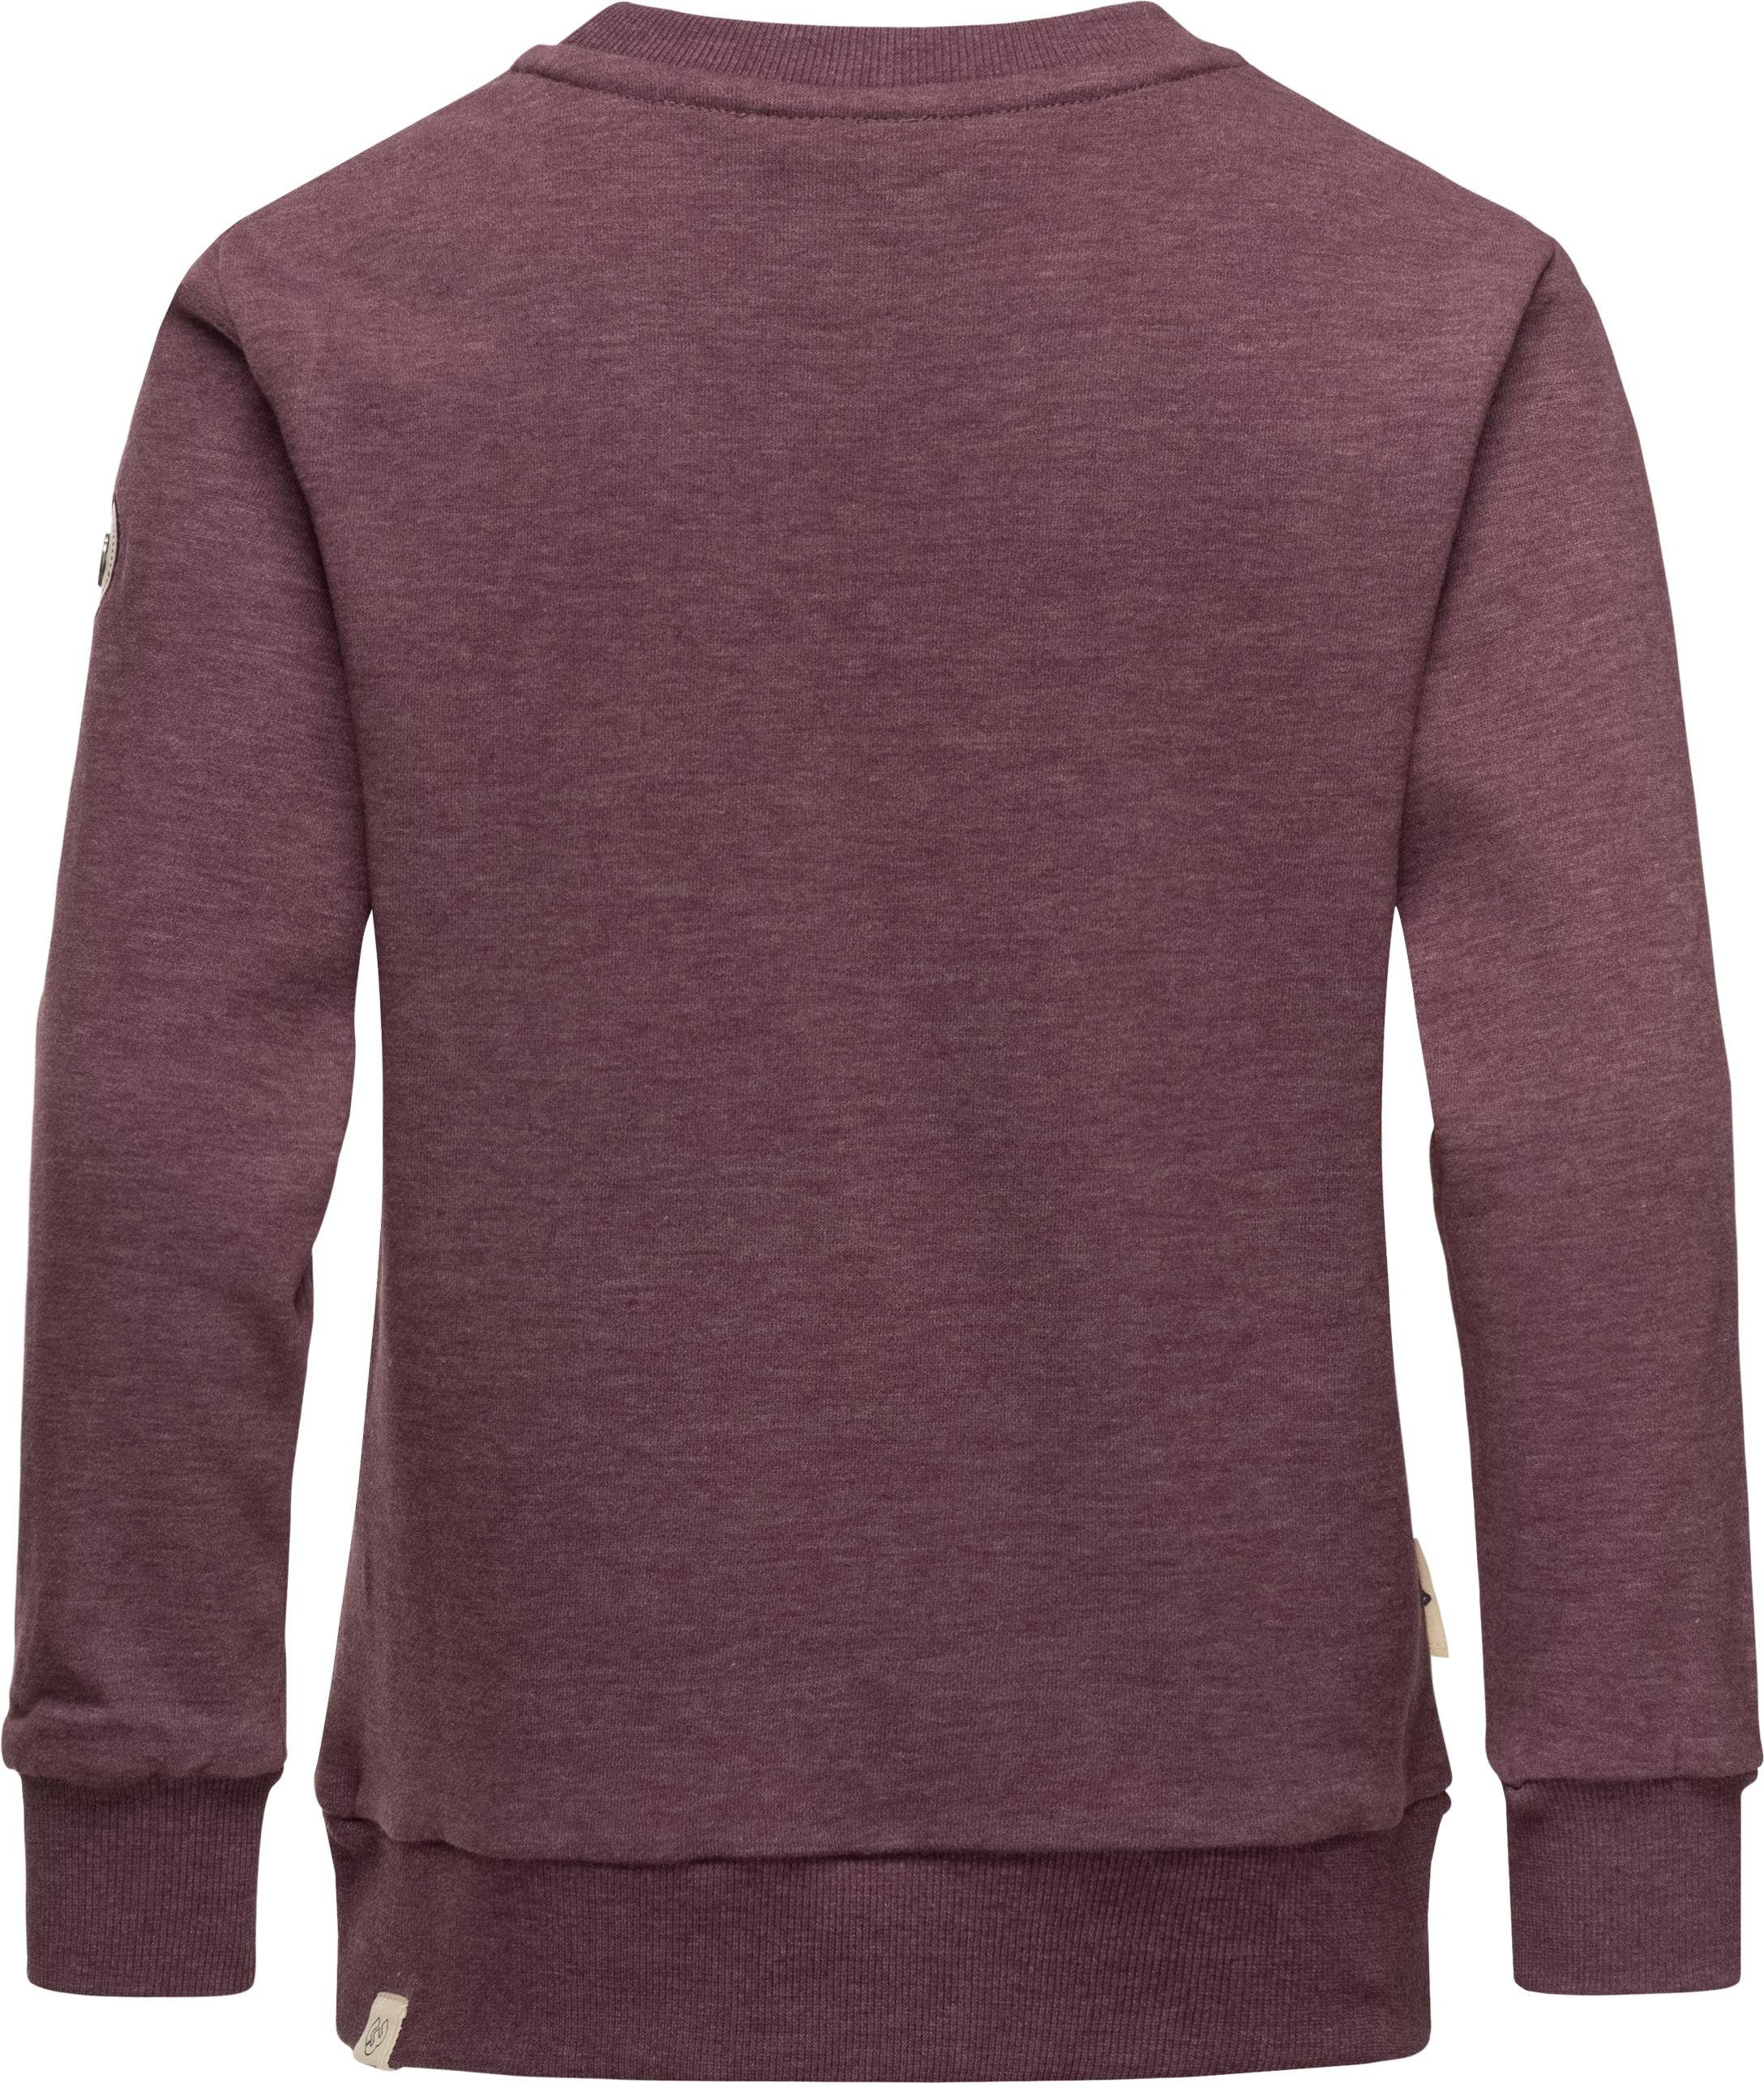 Ragwear Sweater Evka Print Mädchen Organic Sweatshirt stylisches coolem pflaume mit Print